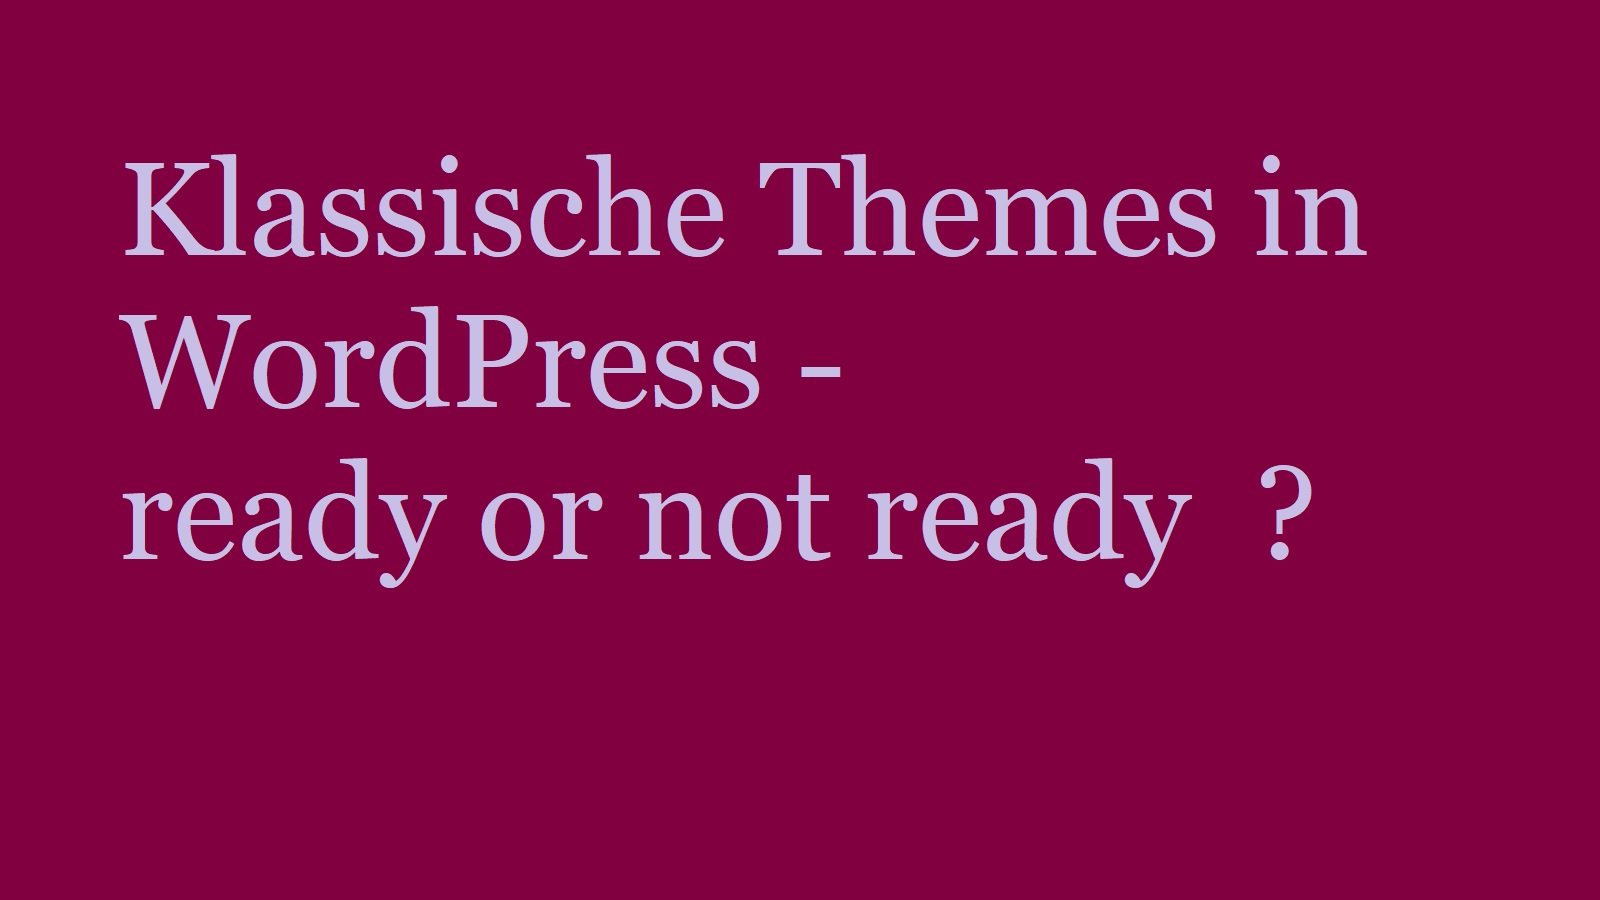 klassische-themes-wordpress